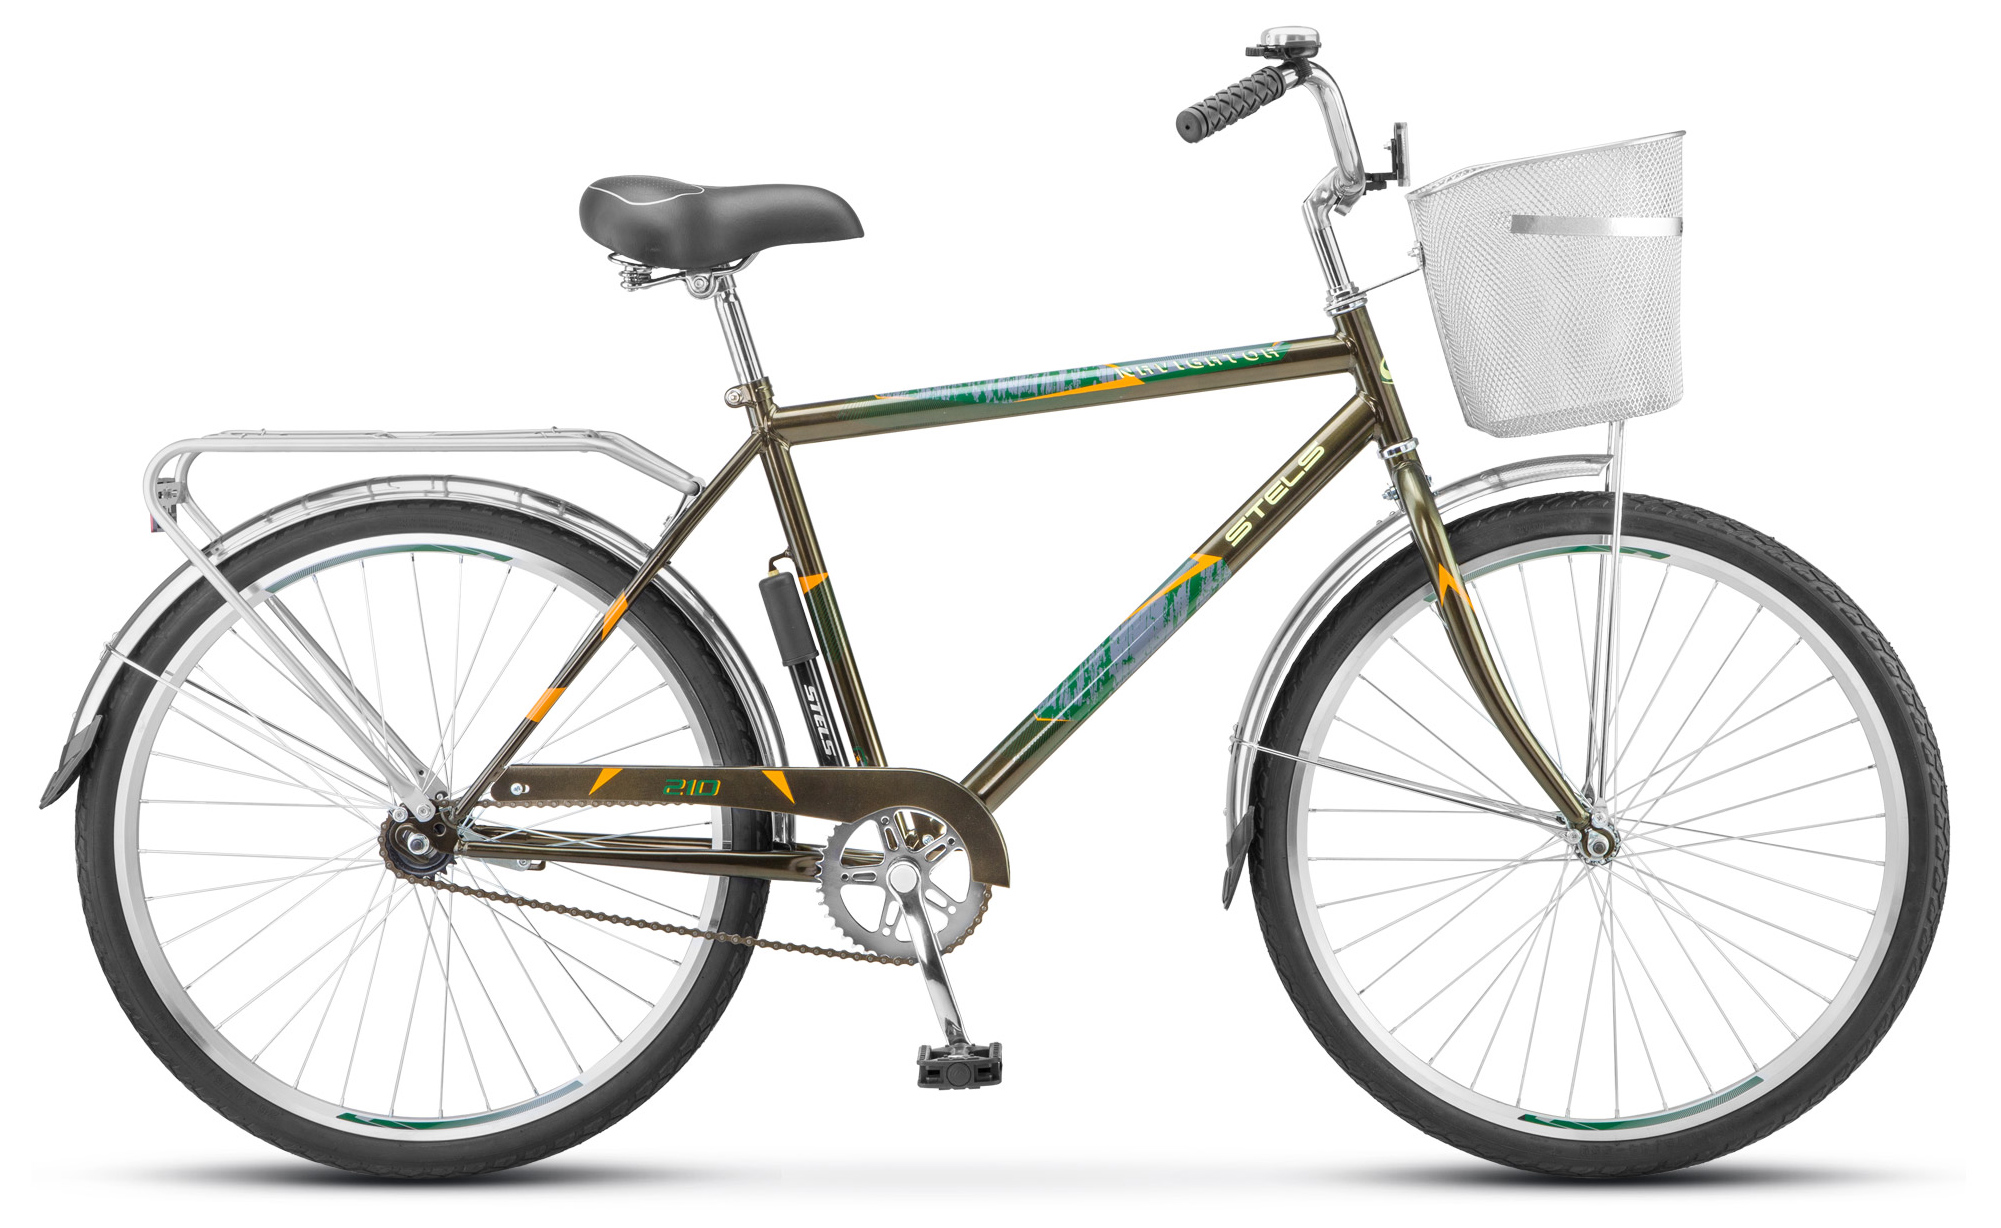  Отзывы о Городском велосипеде Stels Navigator 210 Gent 26" (Z010) 2019